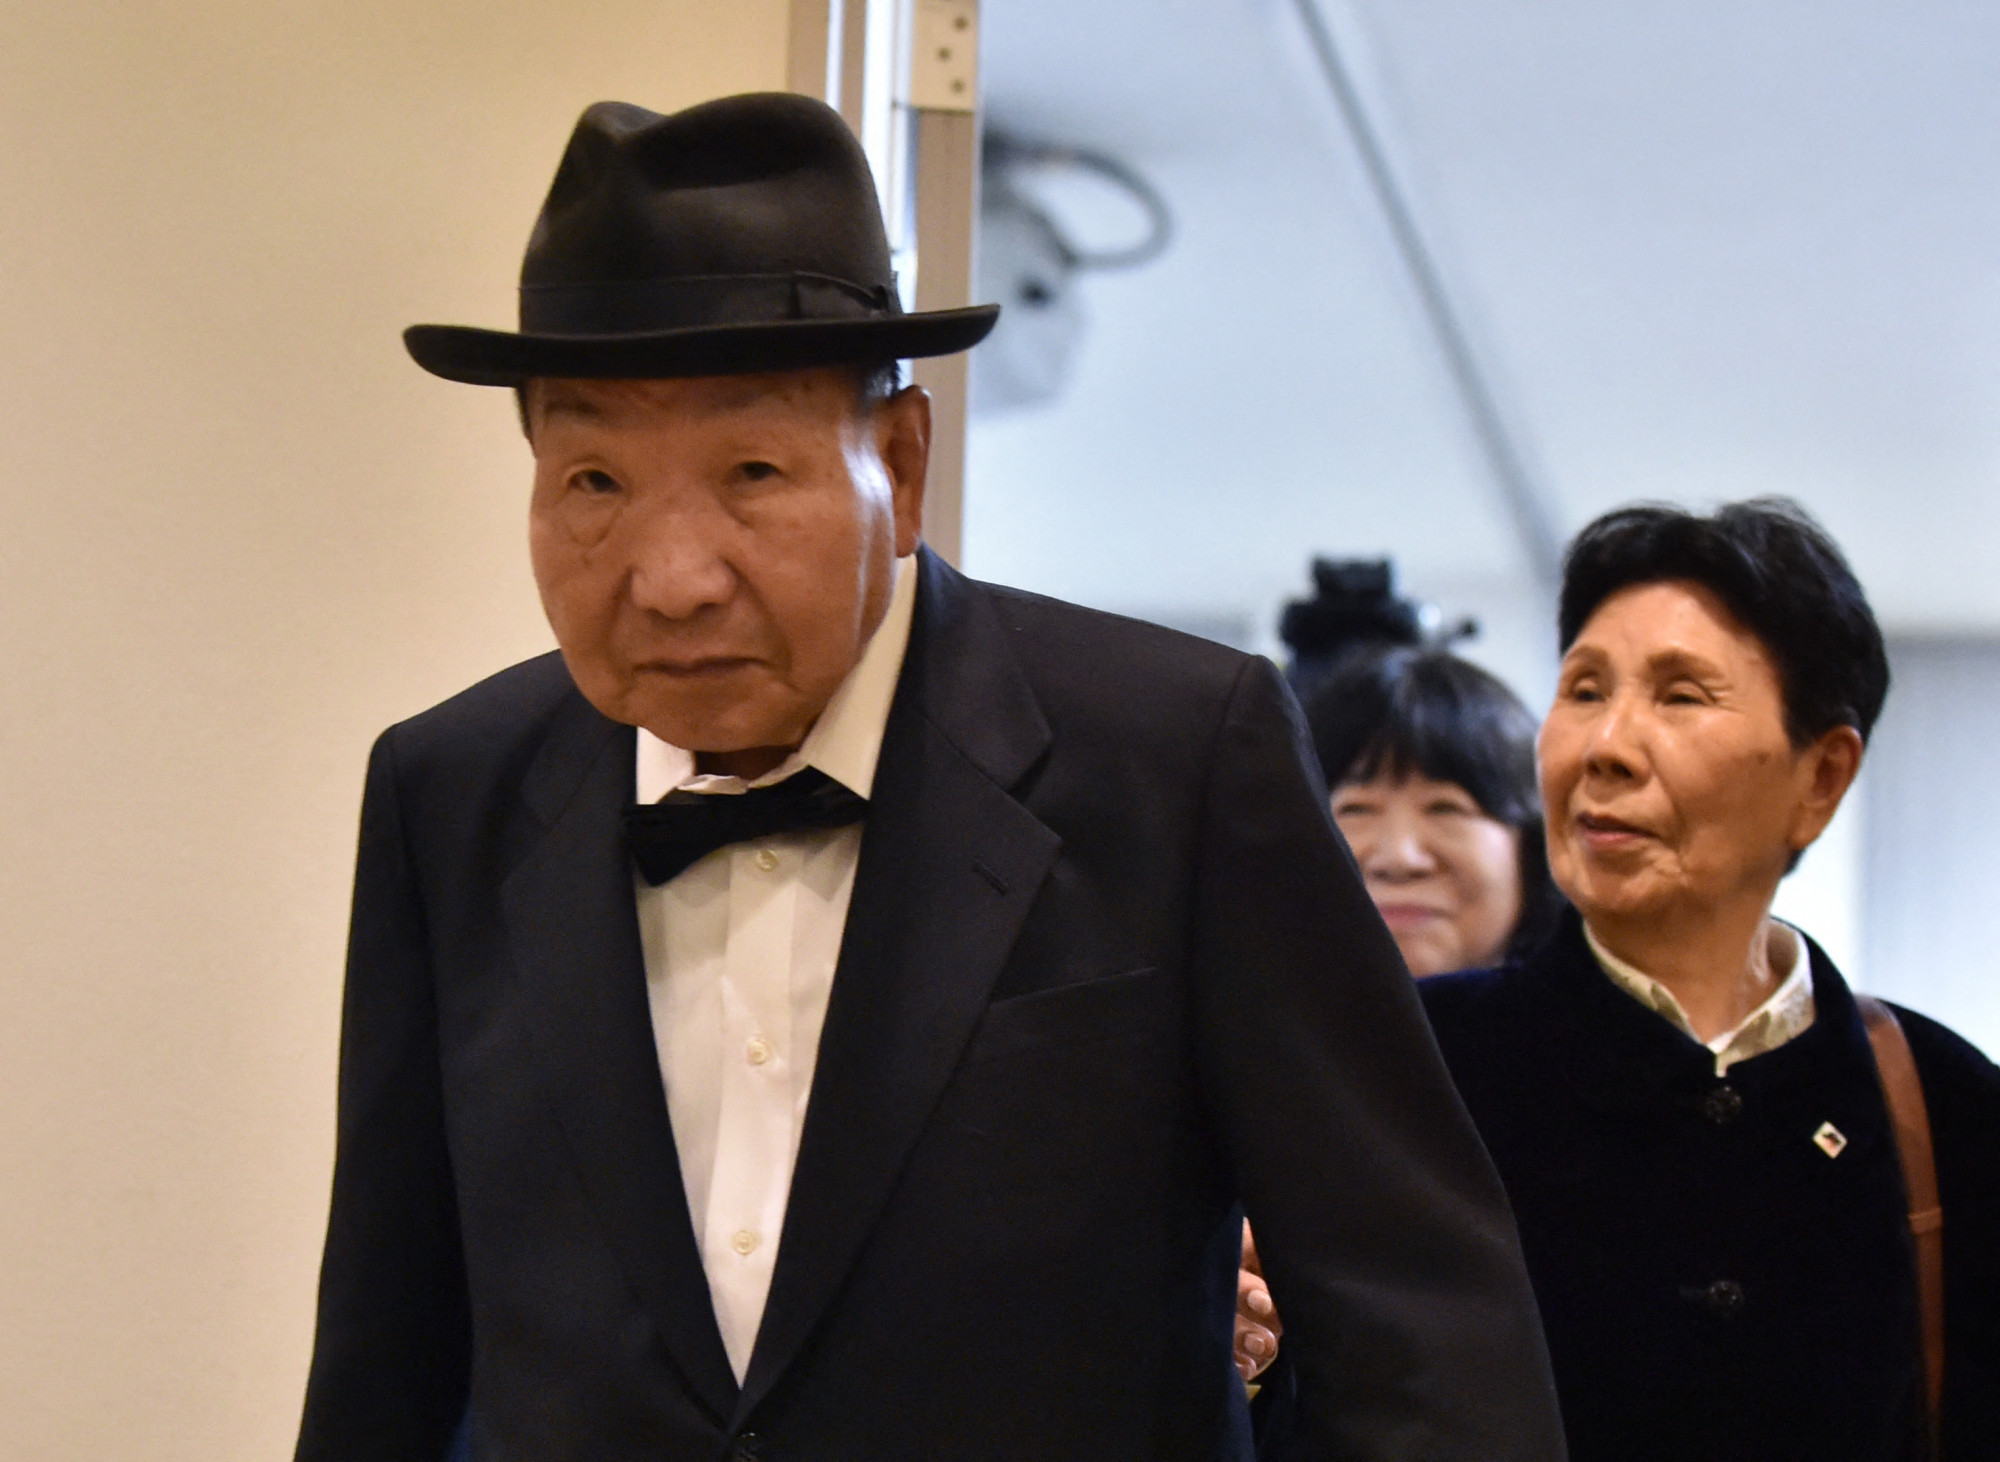 45 évet töltött a siralomházban egy japán férfi, most újratárgyalhatják az ügyét